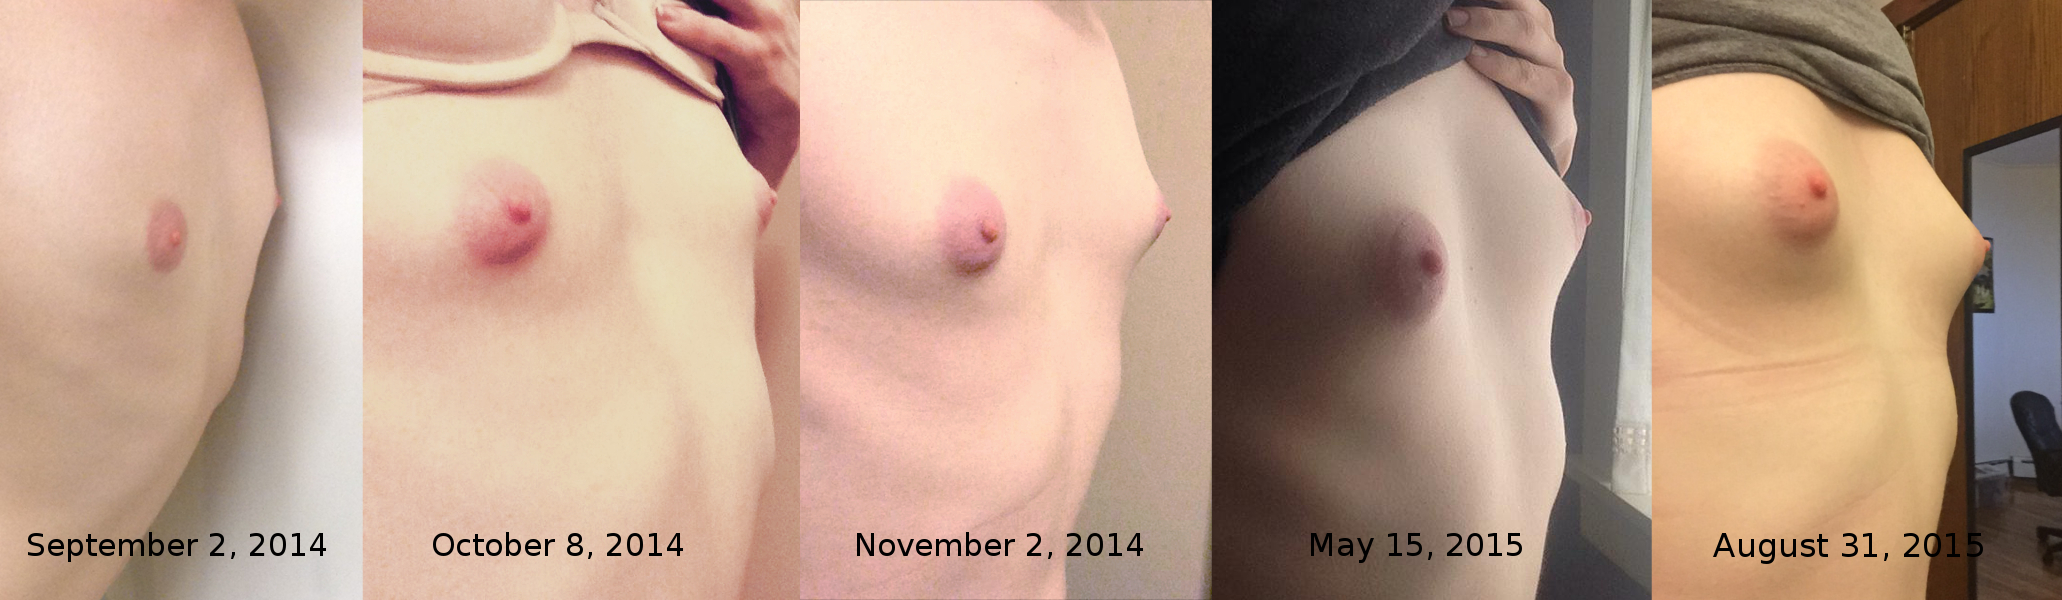 гормоны для роста груди женщин фото 35